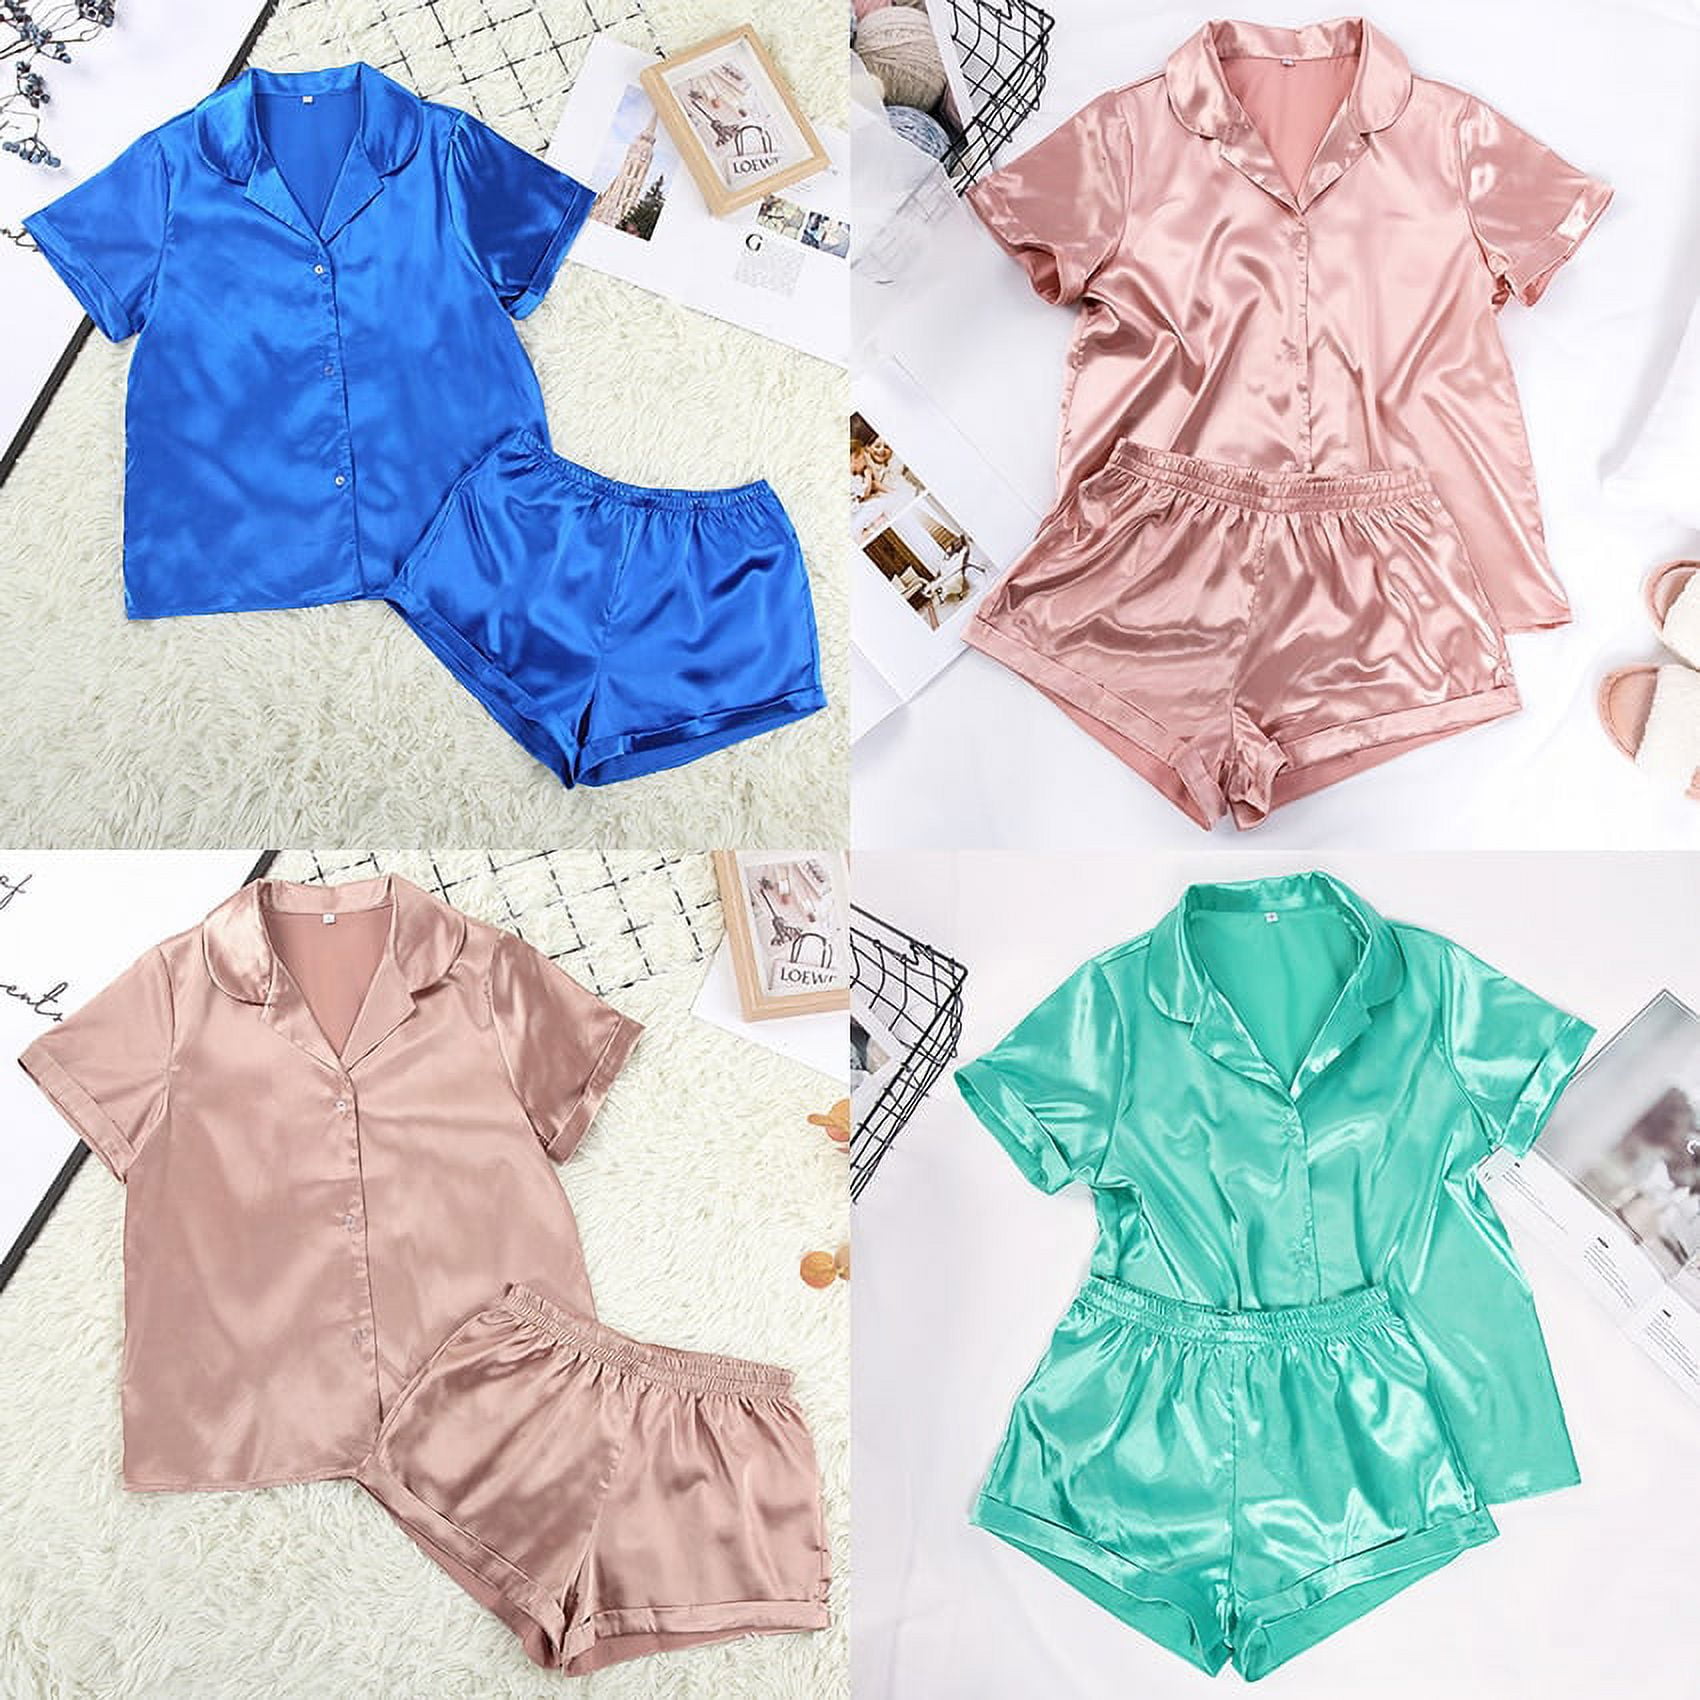 DanceeMangoo Solid Satin Sleepwear Silk Pajamas Set Top And Shorts